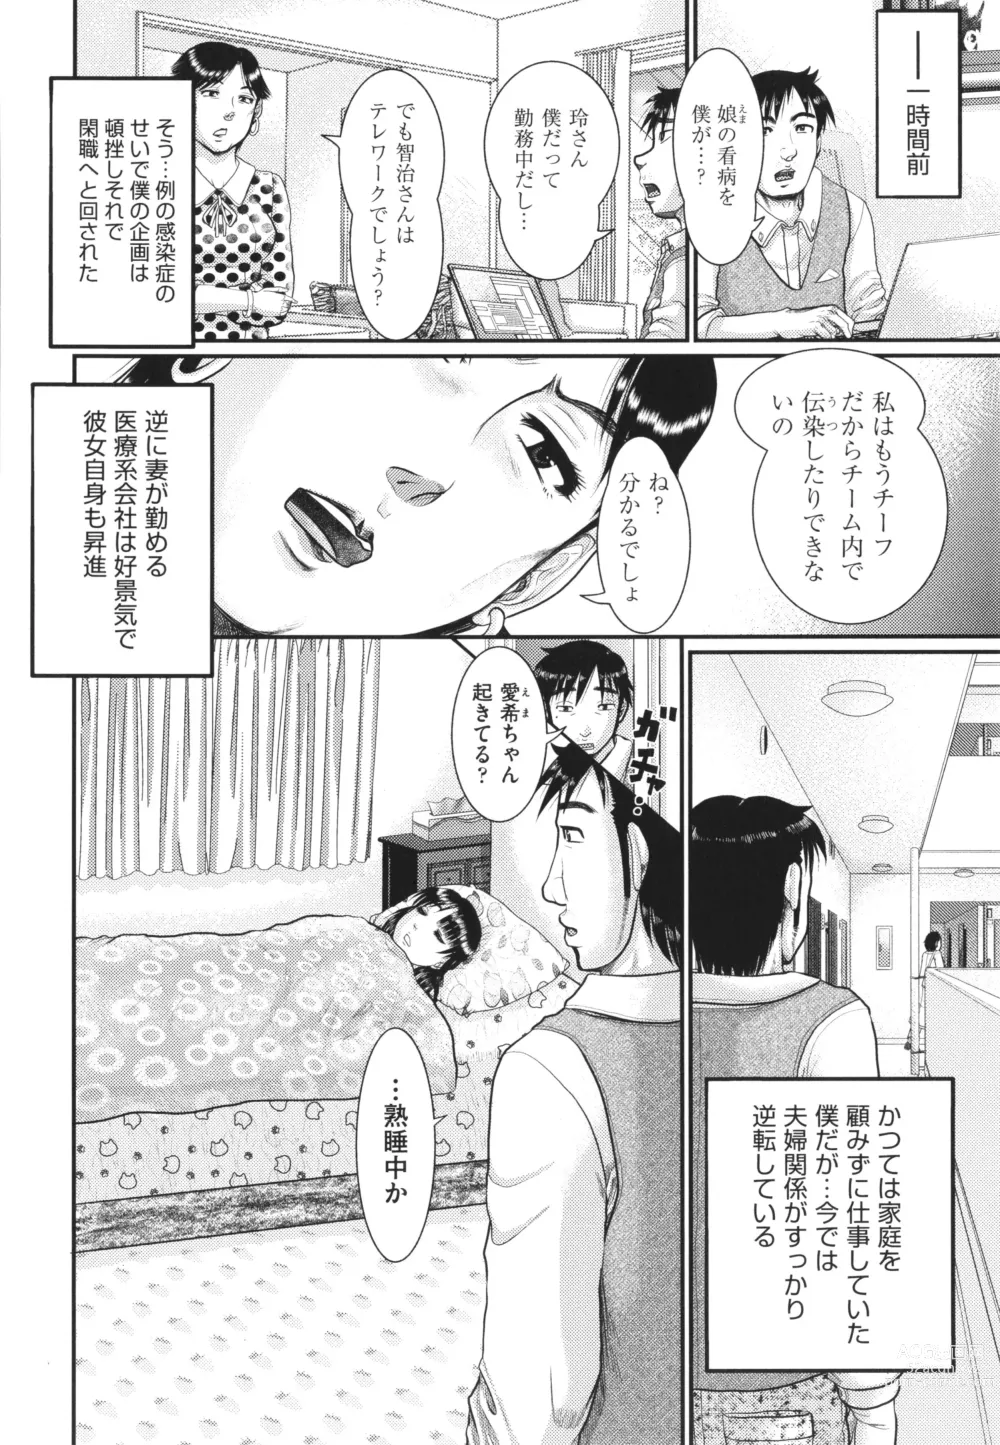 Page 185 of manga Akarui Kazoku Kyoujoku